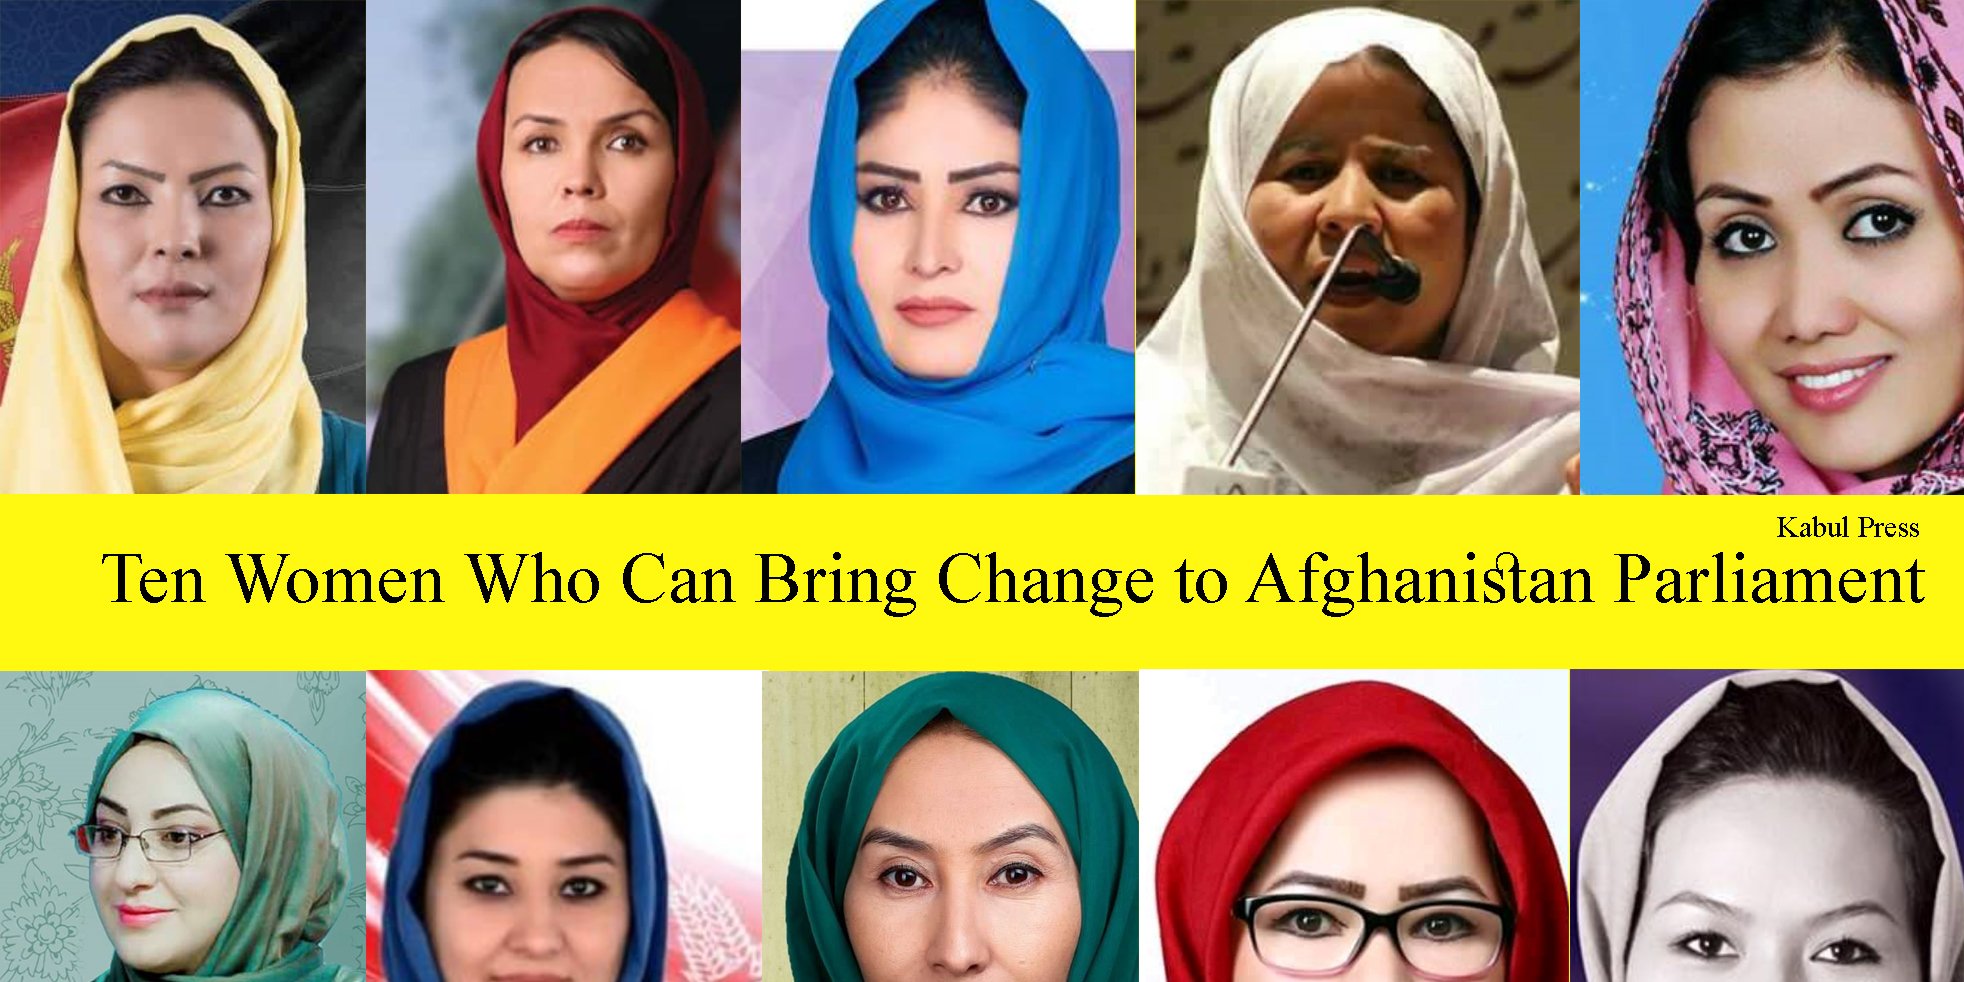 ده زن که می توانند پارلمان را تغییر دهند